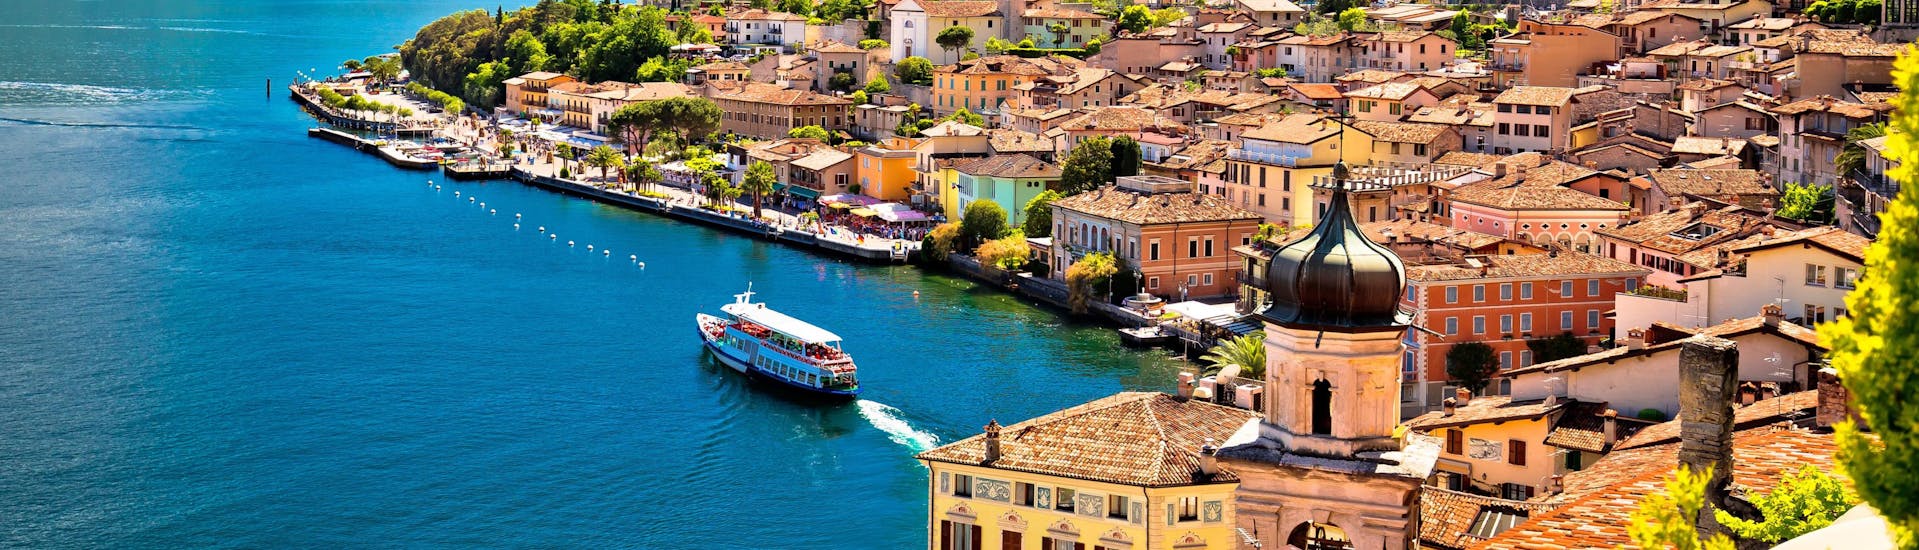 Het stadje Limone sul Garda aan het Gardameer waar je online boottochten kunt boeken.